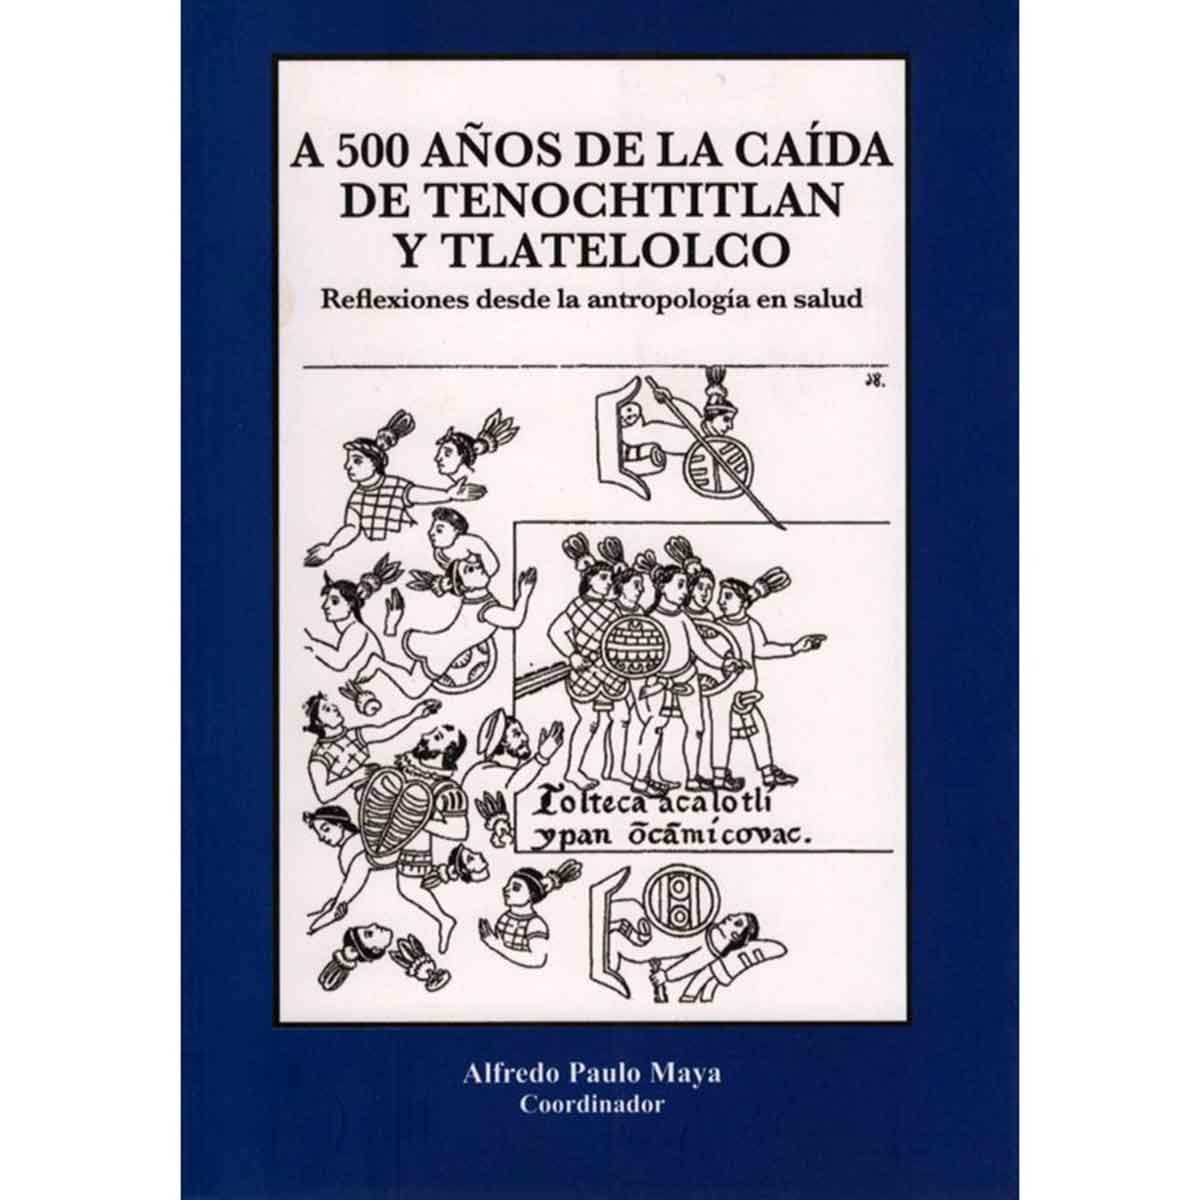 A 500 AÑOS DE LA CAÍDA DE TENOCHTITLAN Y TLATELOLCO